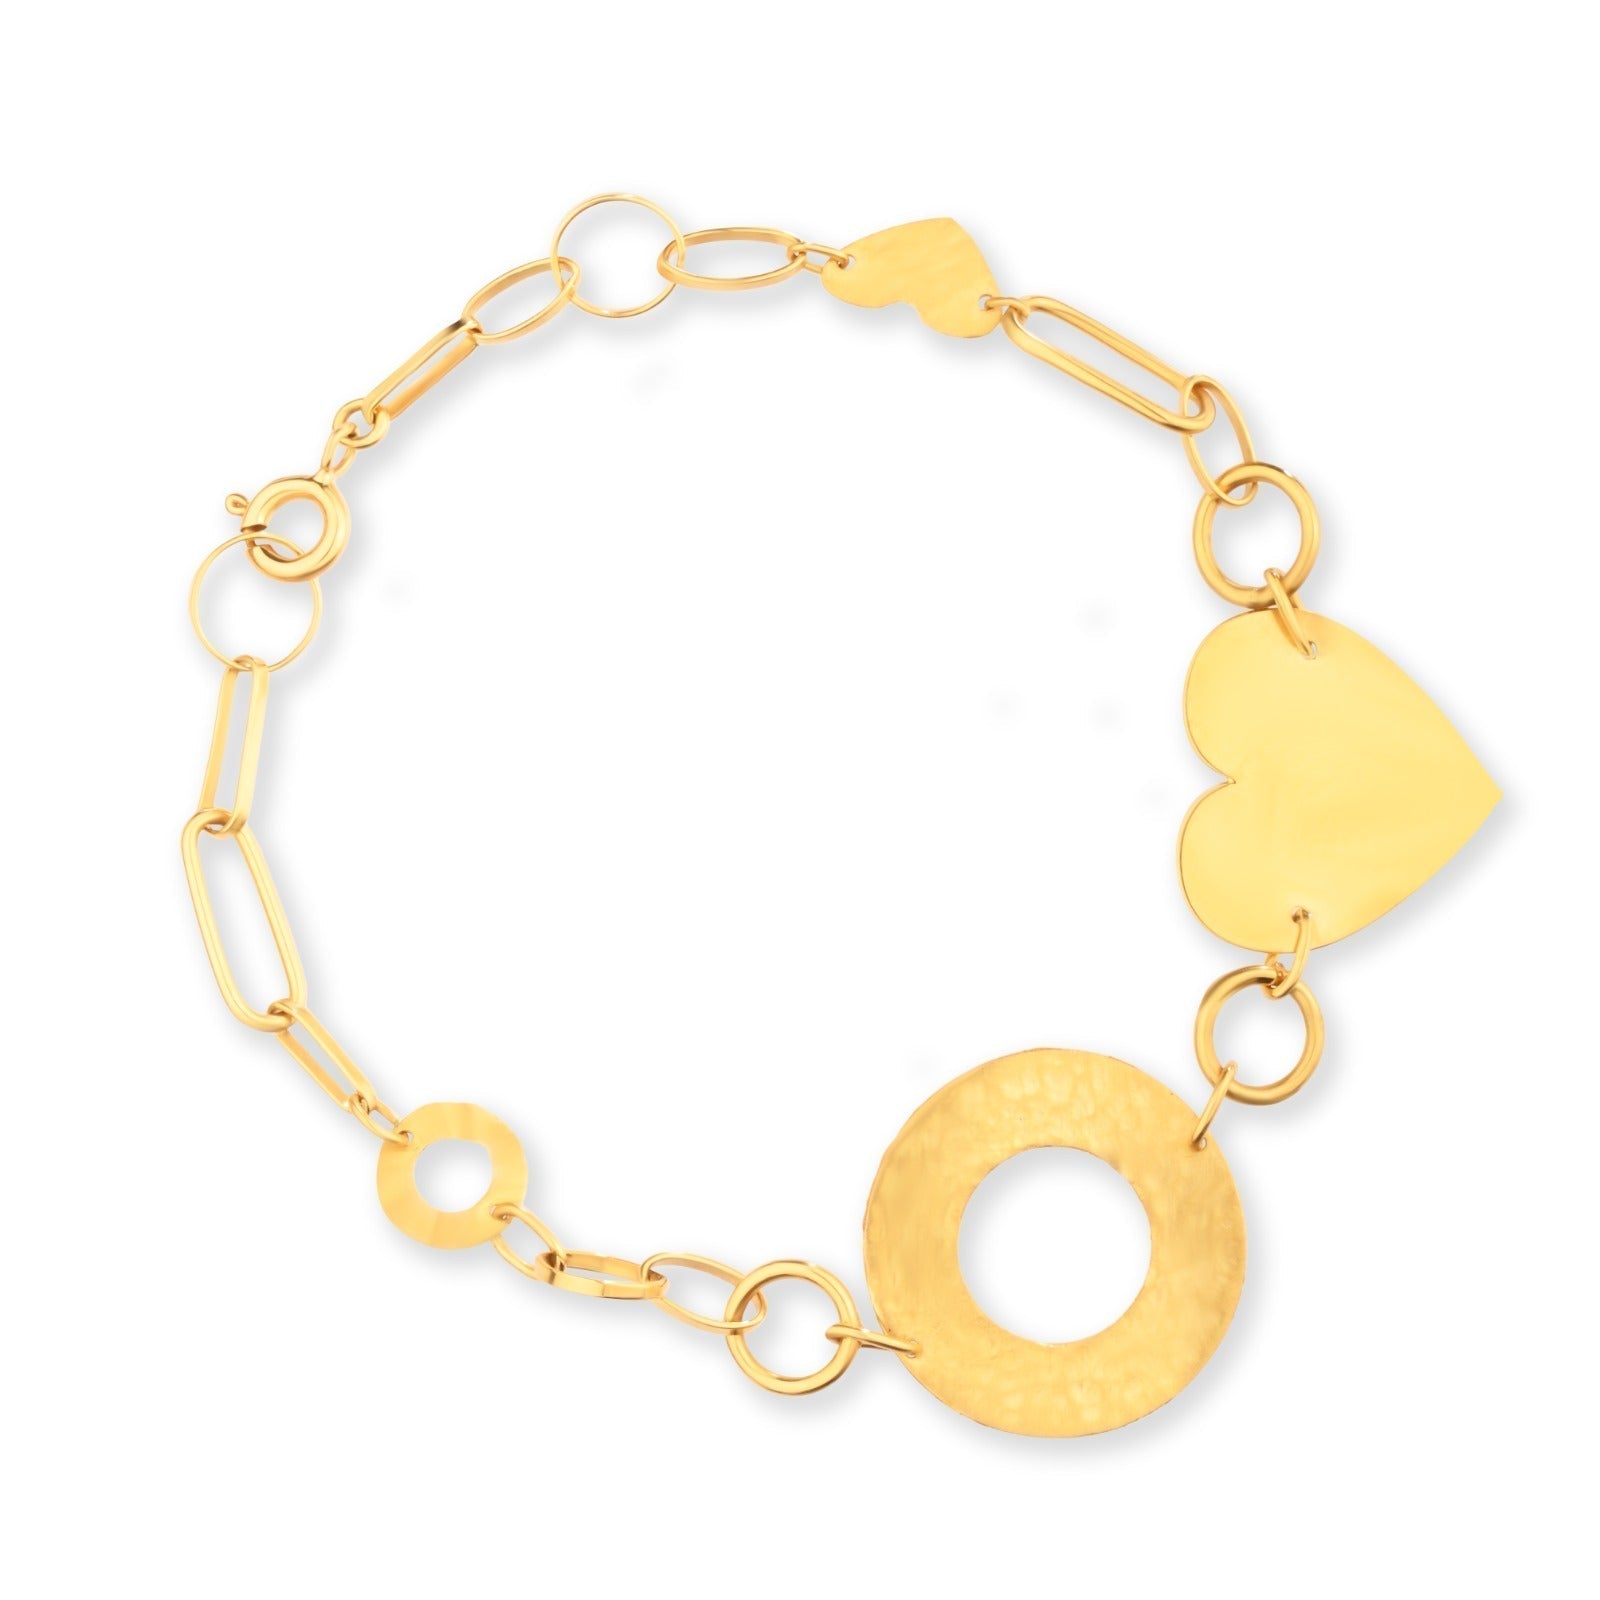 Simple Linglong heart shaped Bracelet in 18K Yellow gold / J-B034C